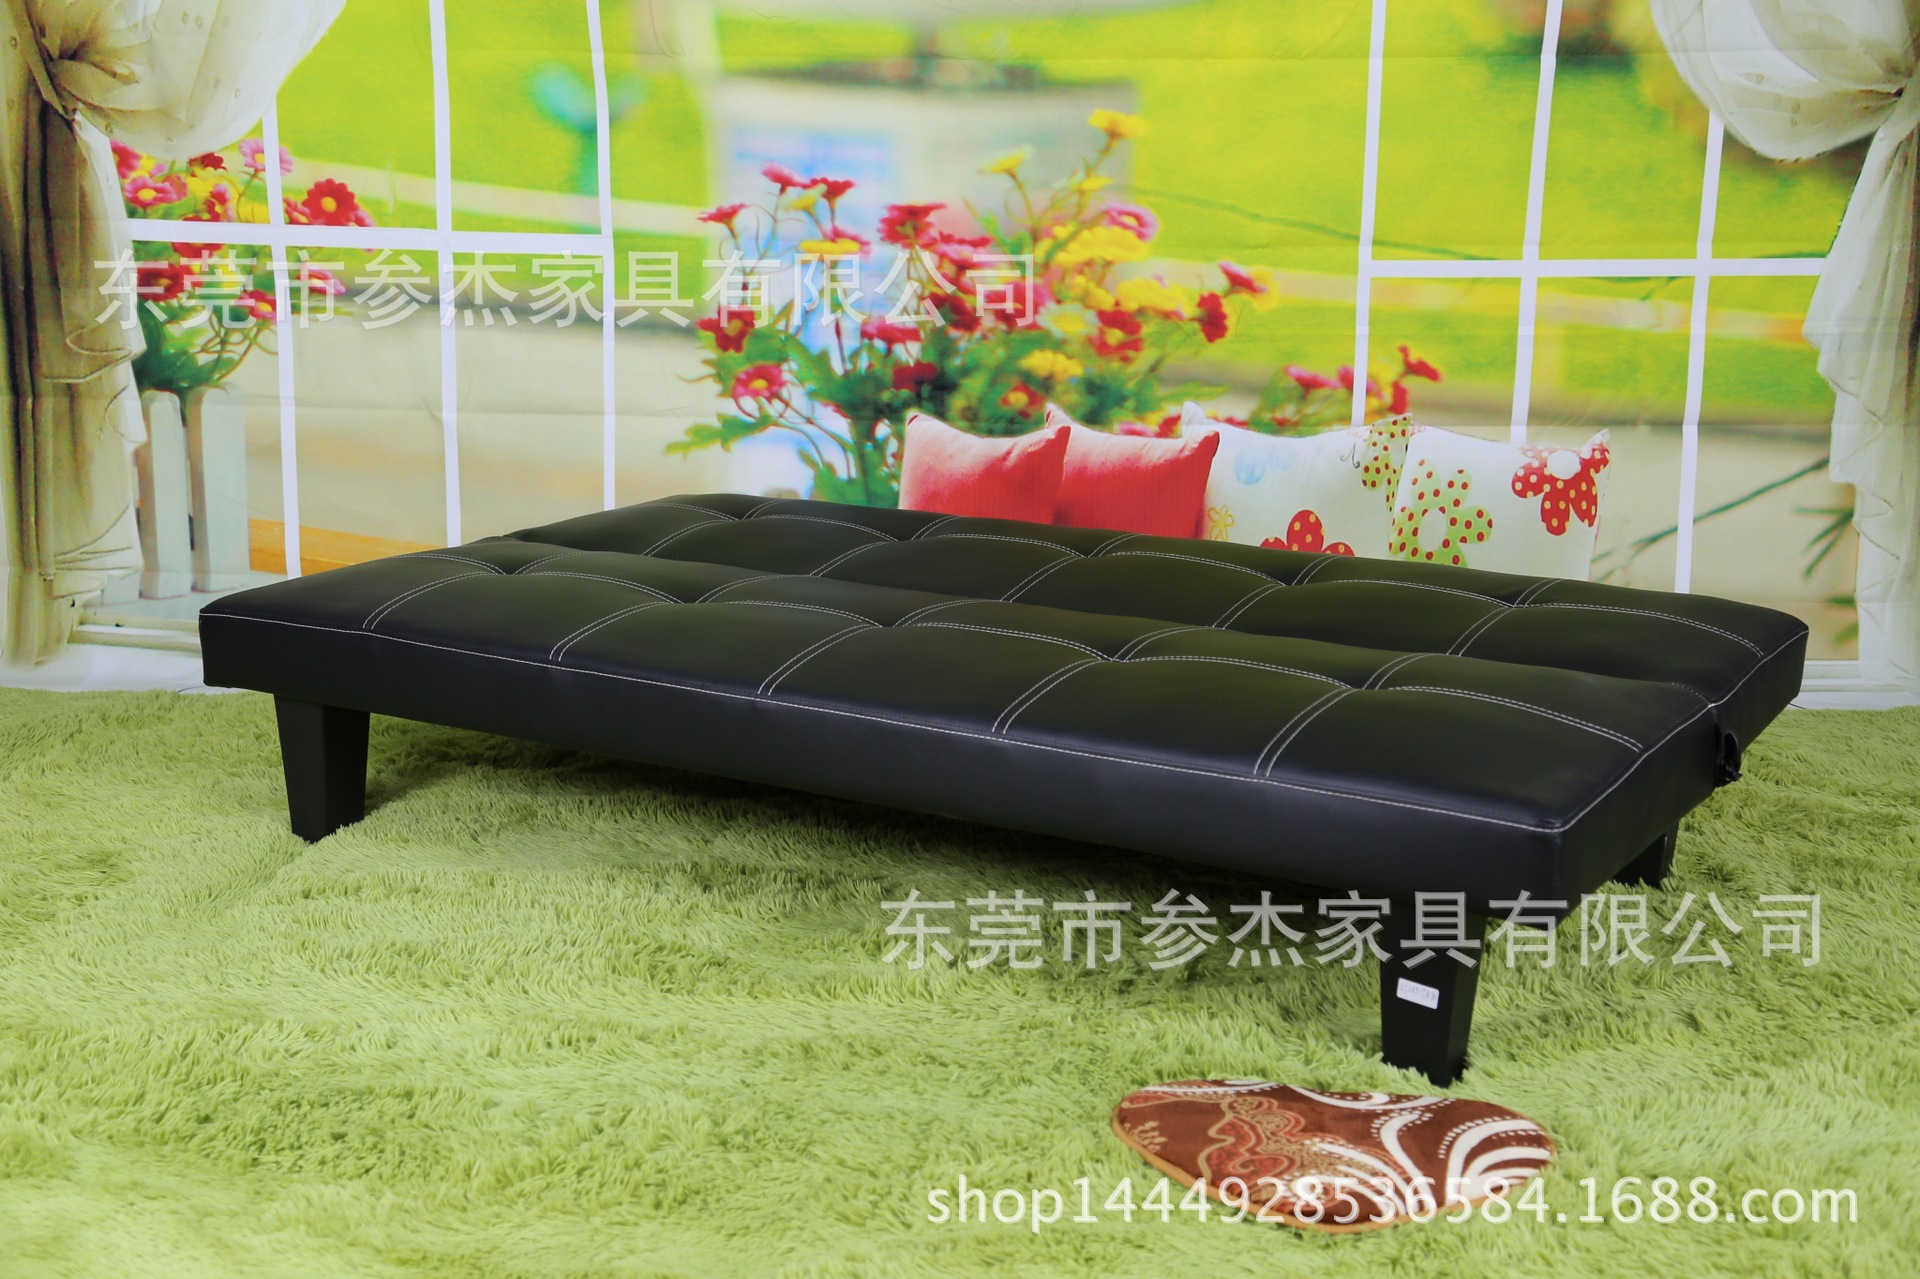 特價沙發床PU皮質折疊功能全廠最低價格顏色佈料可定製1